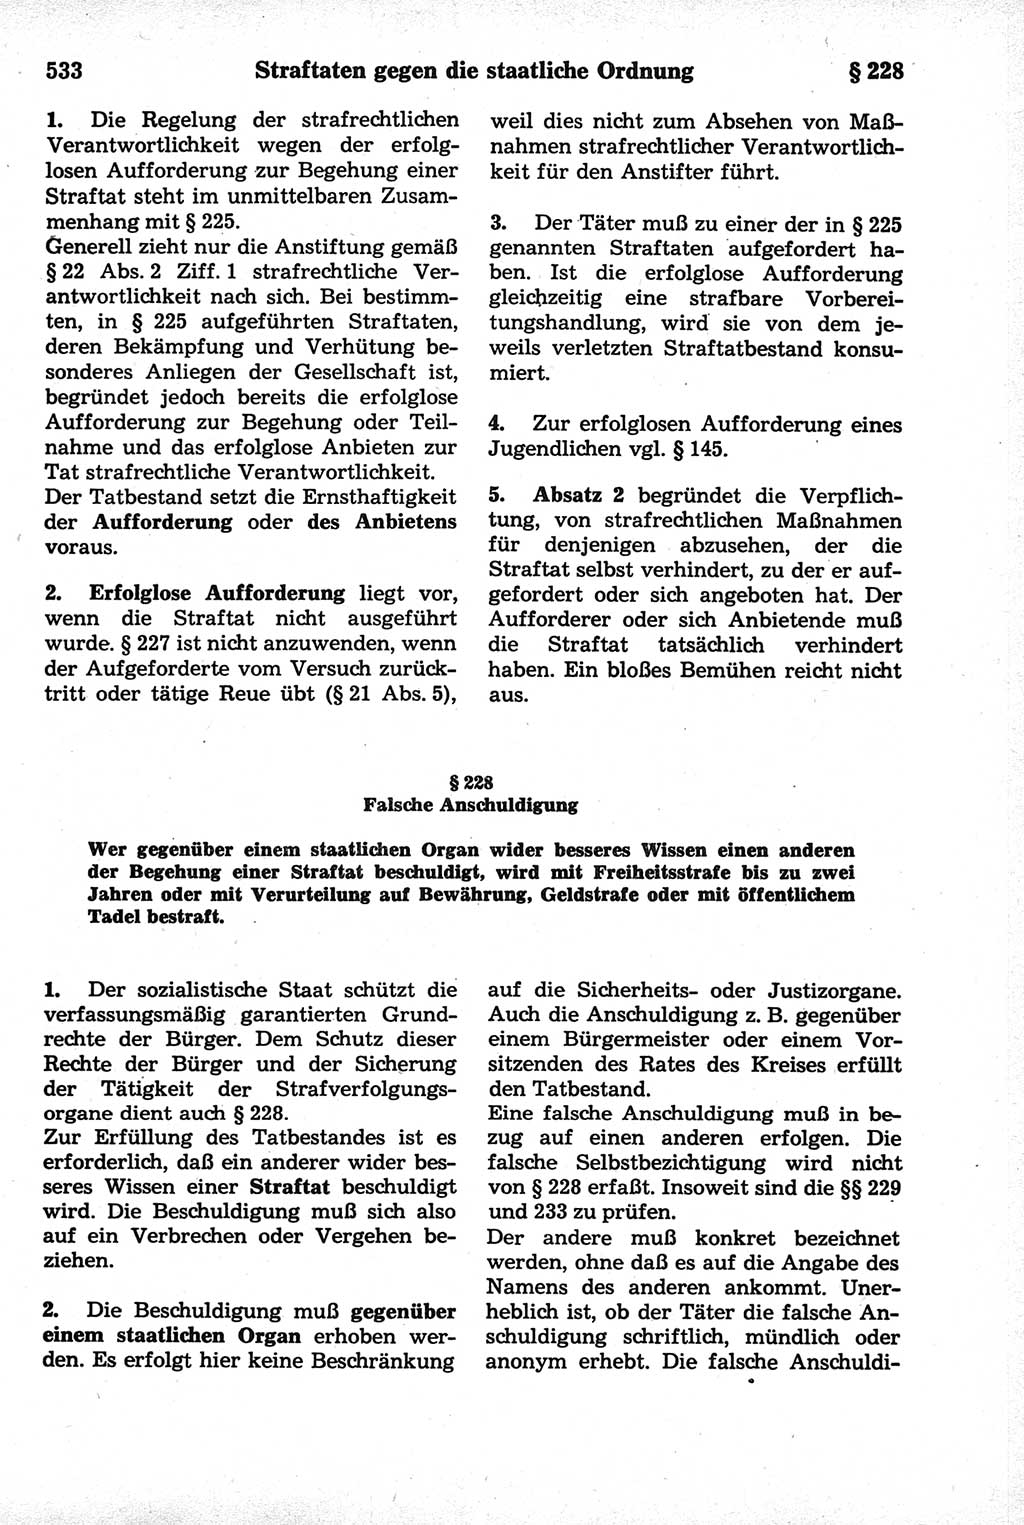 Strafrecht der Deutschen Demokratischen Republik (DDR), Kommentar zum Strafgesetzbuch (StGB) 1981, Seite 533 (Strafr. DDR Komm. StGB 1981, S. 533)